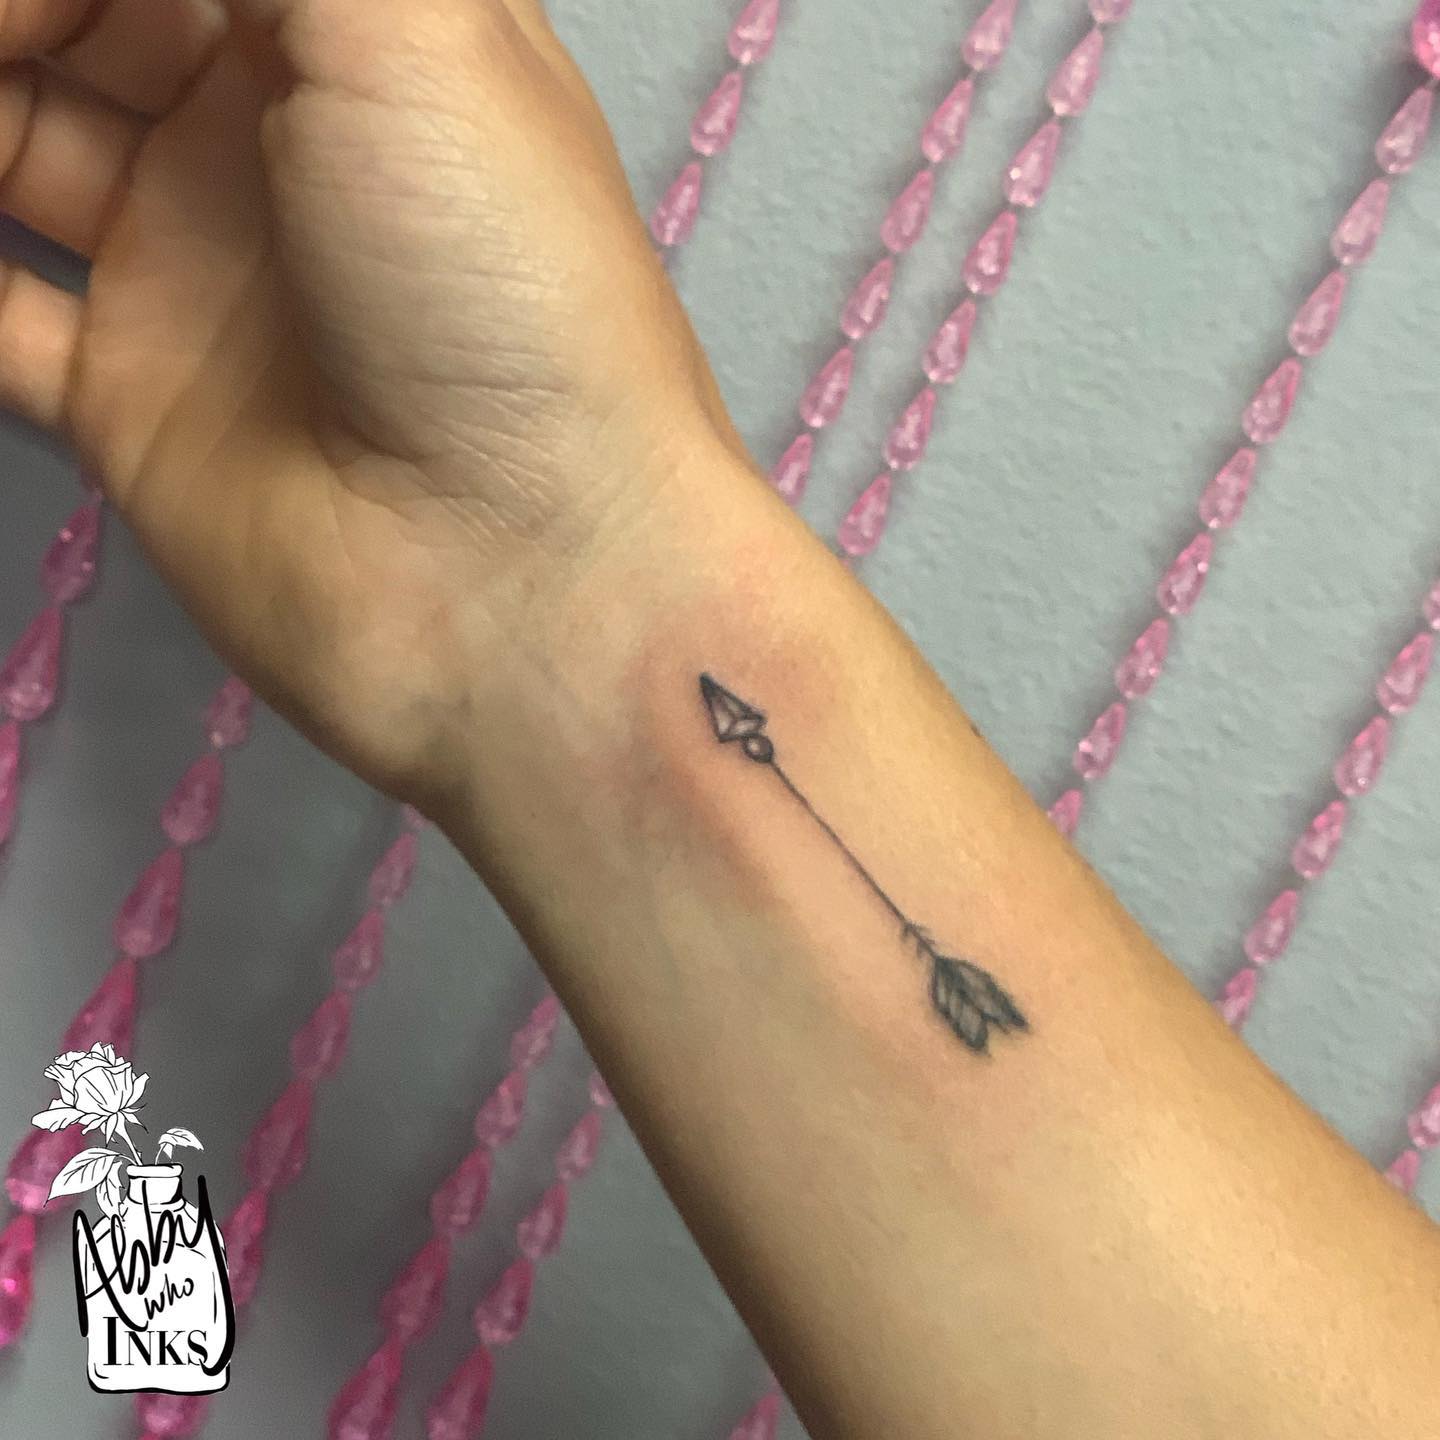 Chevron Temporary Tattoo / Arrow Tattoo / Small Arrow Tattoo / Tiny Arrow  Tattoo / Chevrons Tattoo / Wrist Tattoos / Small Tattoos - Etsy